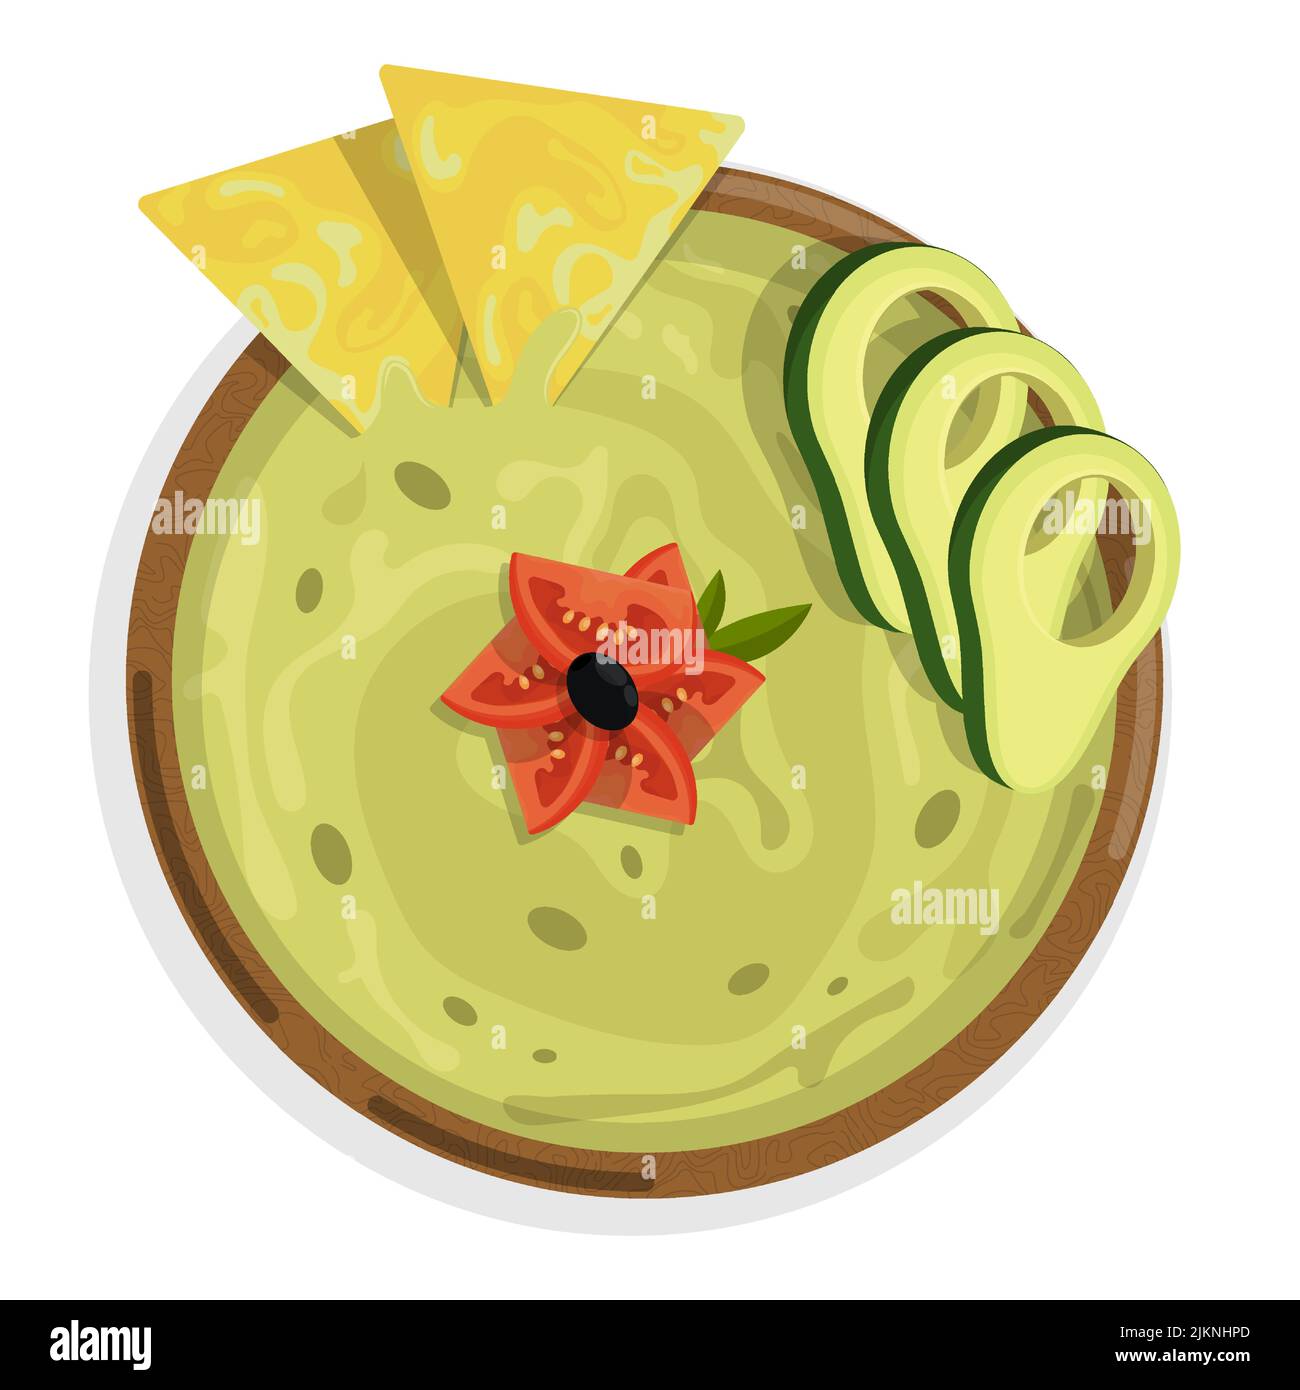 Schüssel mit würziger mexikanischer Guacamole-Sauce. Scharfe Chips, Vorspeise für Hauptgericht, Draufsicht. Cartoon-Vektor auf weißem Hintergrund isoliert Stock Vektor